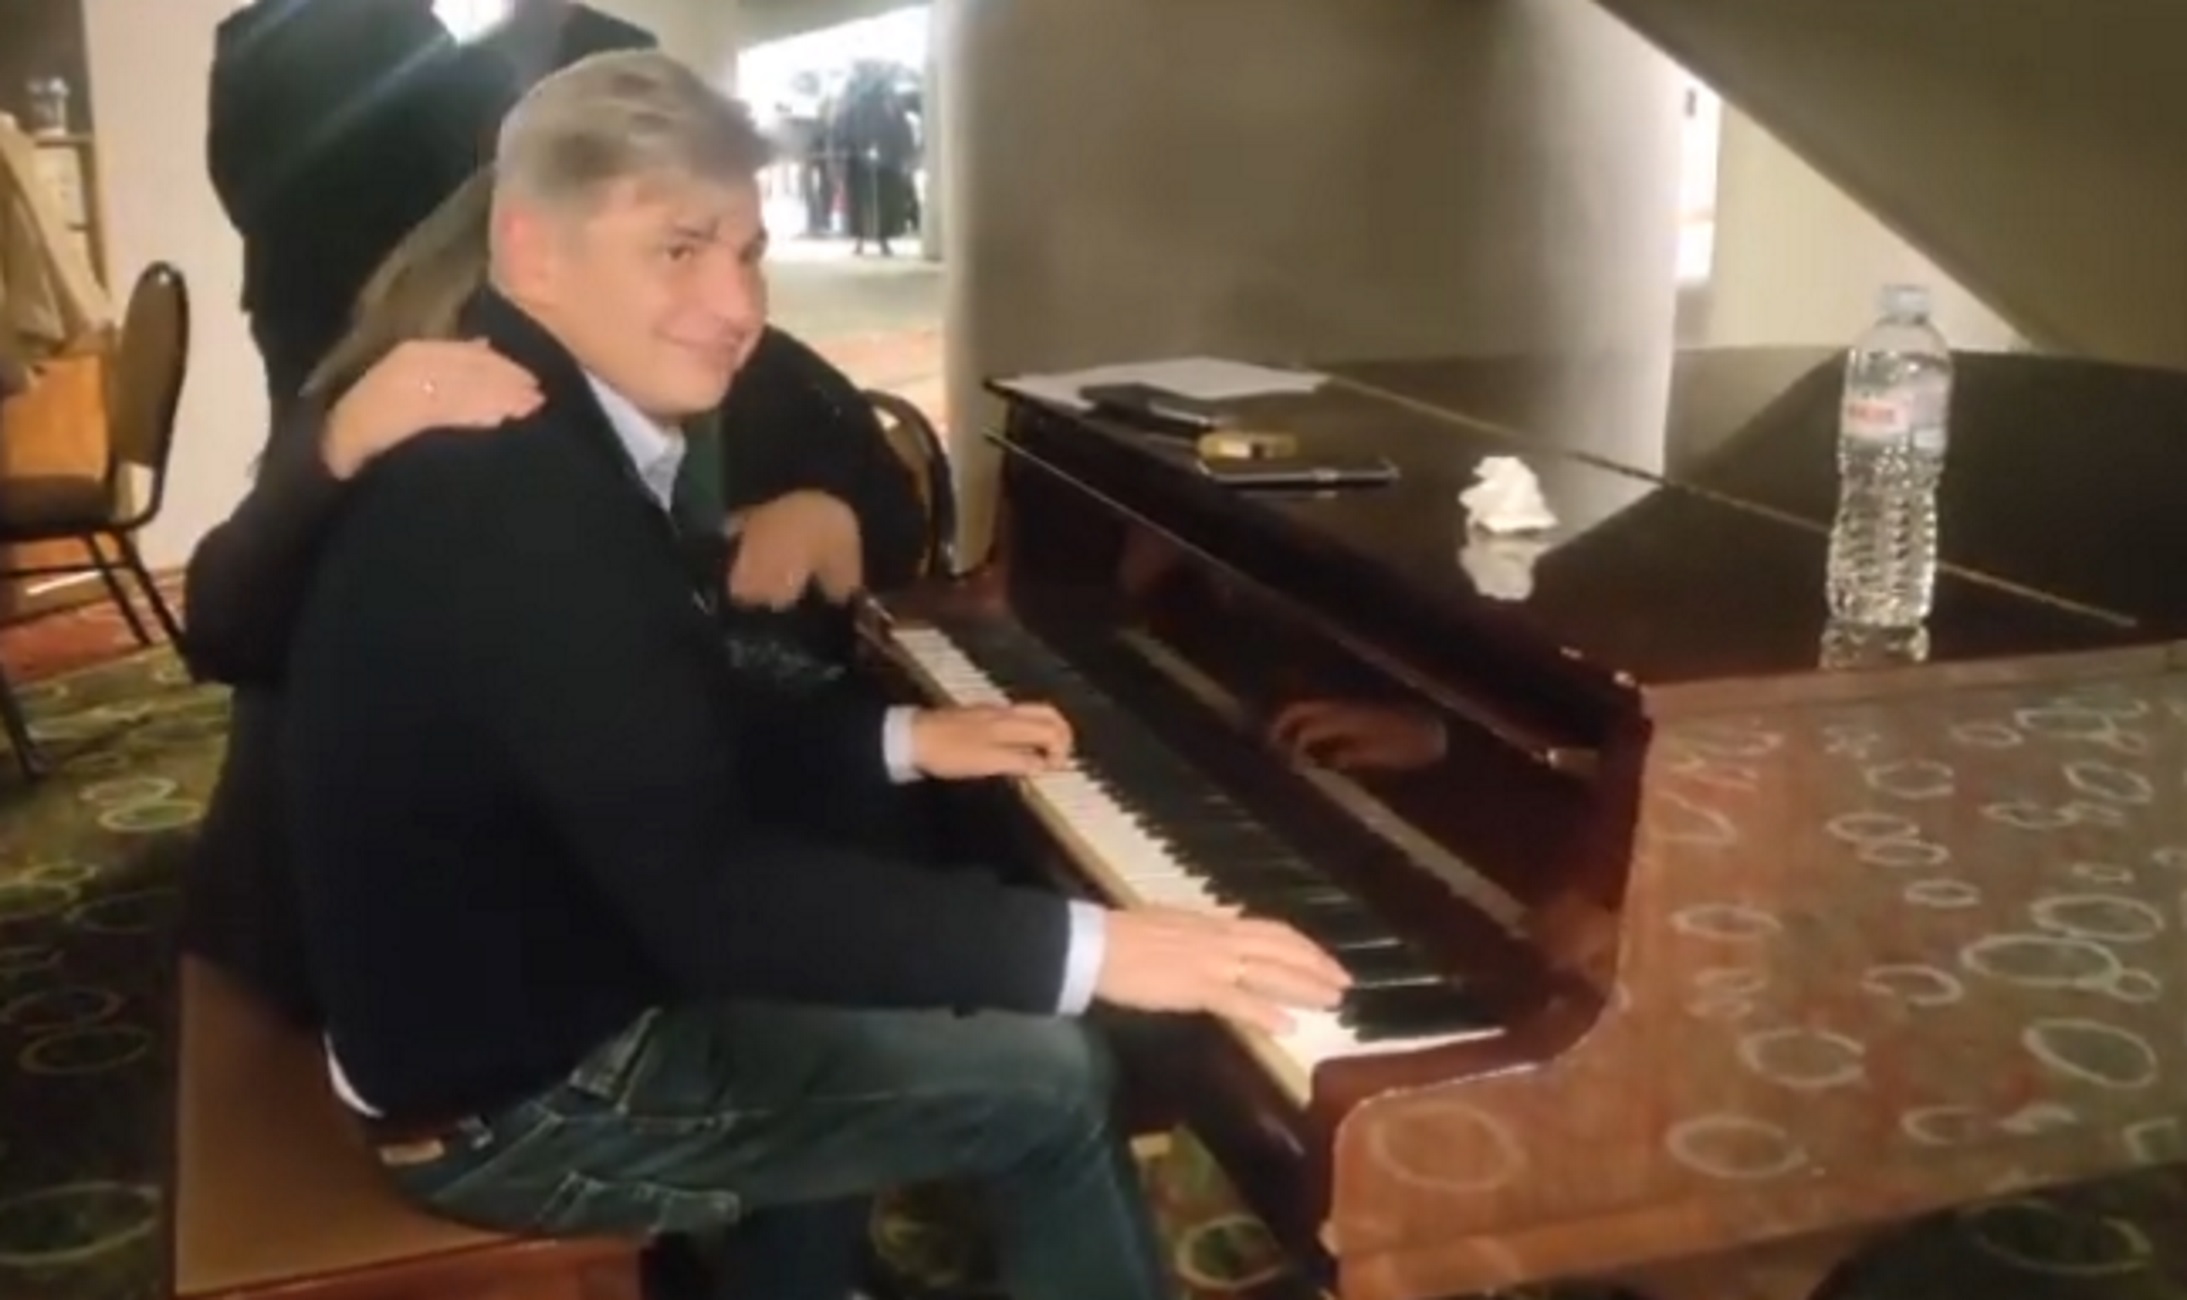 ΣΥΡΙΖΑ: «Κι είμαστε ακόμα ζωντανοί» – Δείτε τον Φαραντούρη να παίζει πιάνο έξω από την Κεντρική Επιτροπή